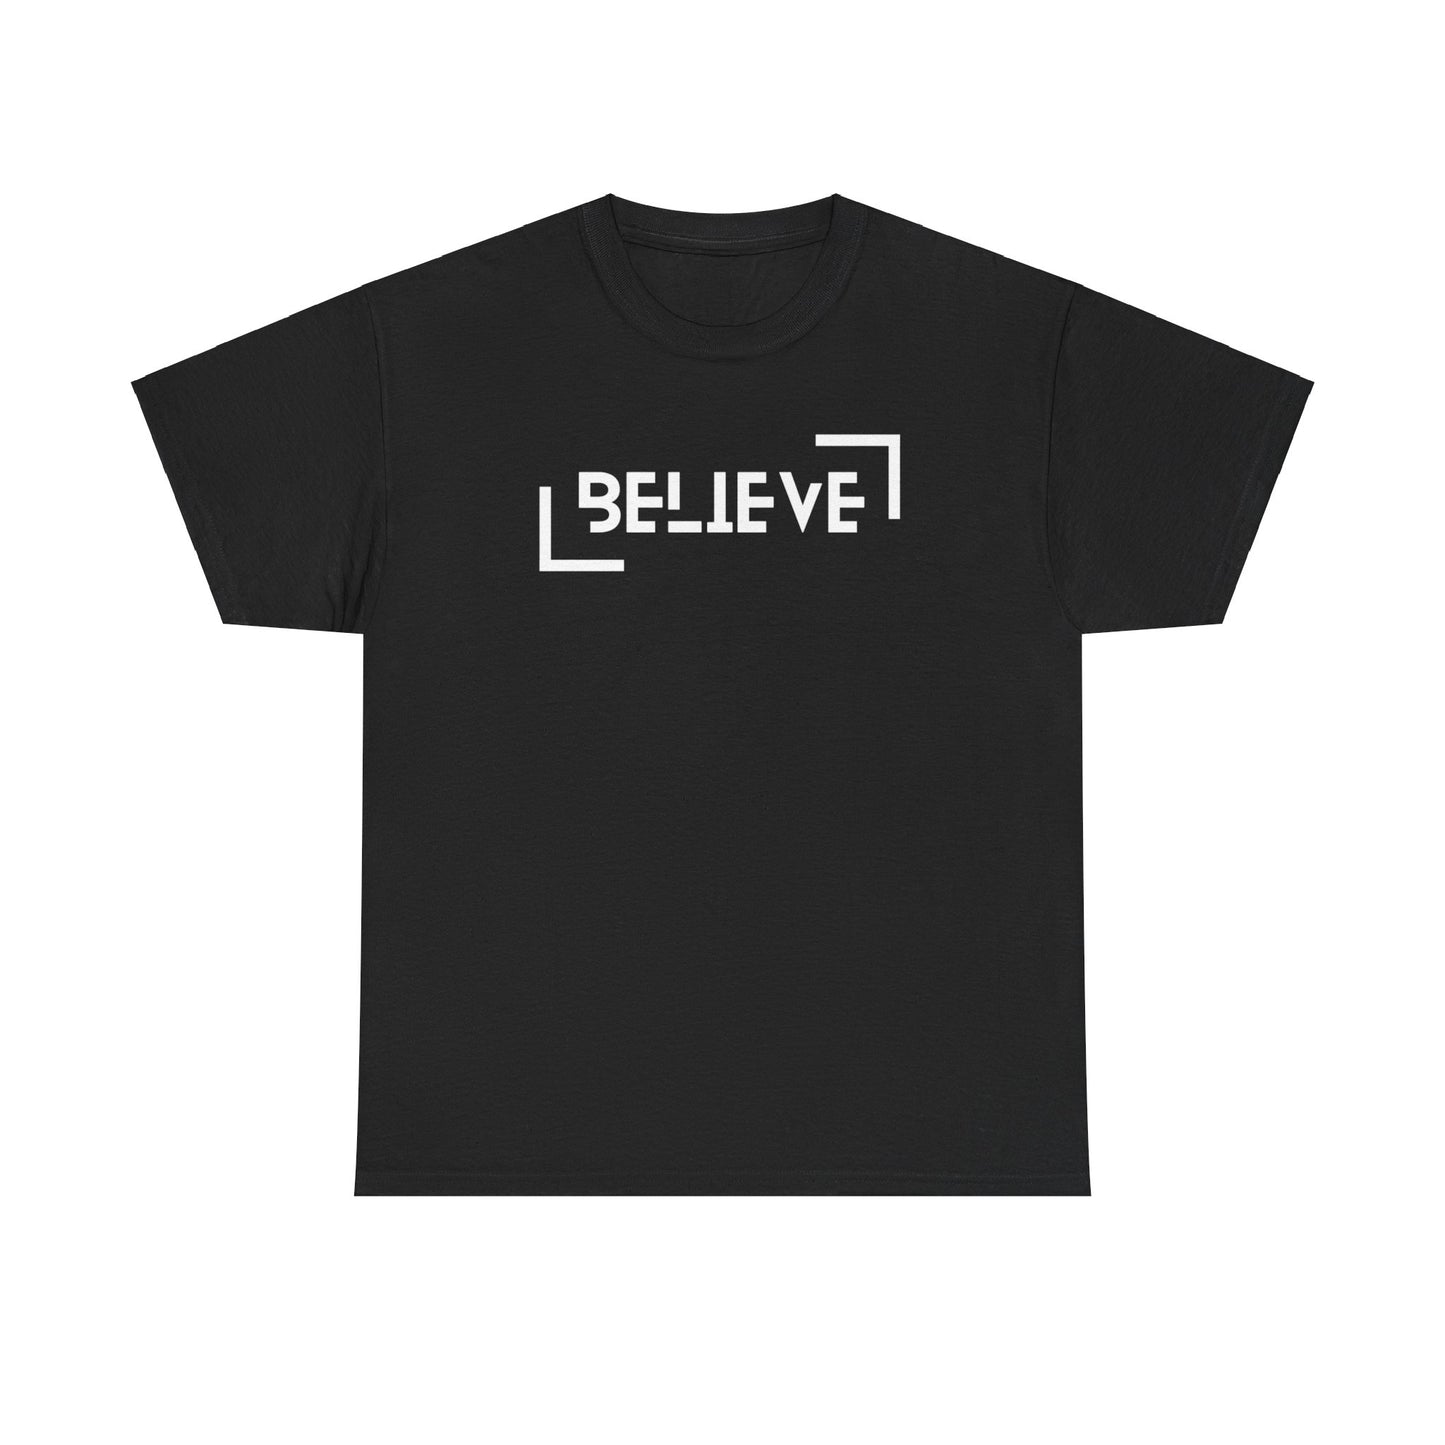 Believe t-shirt